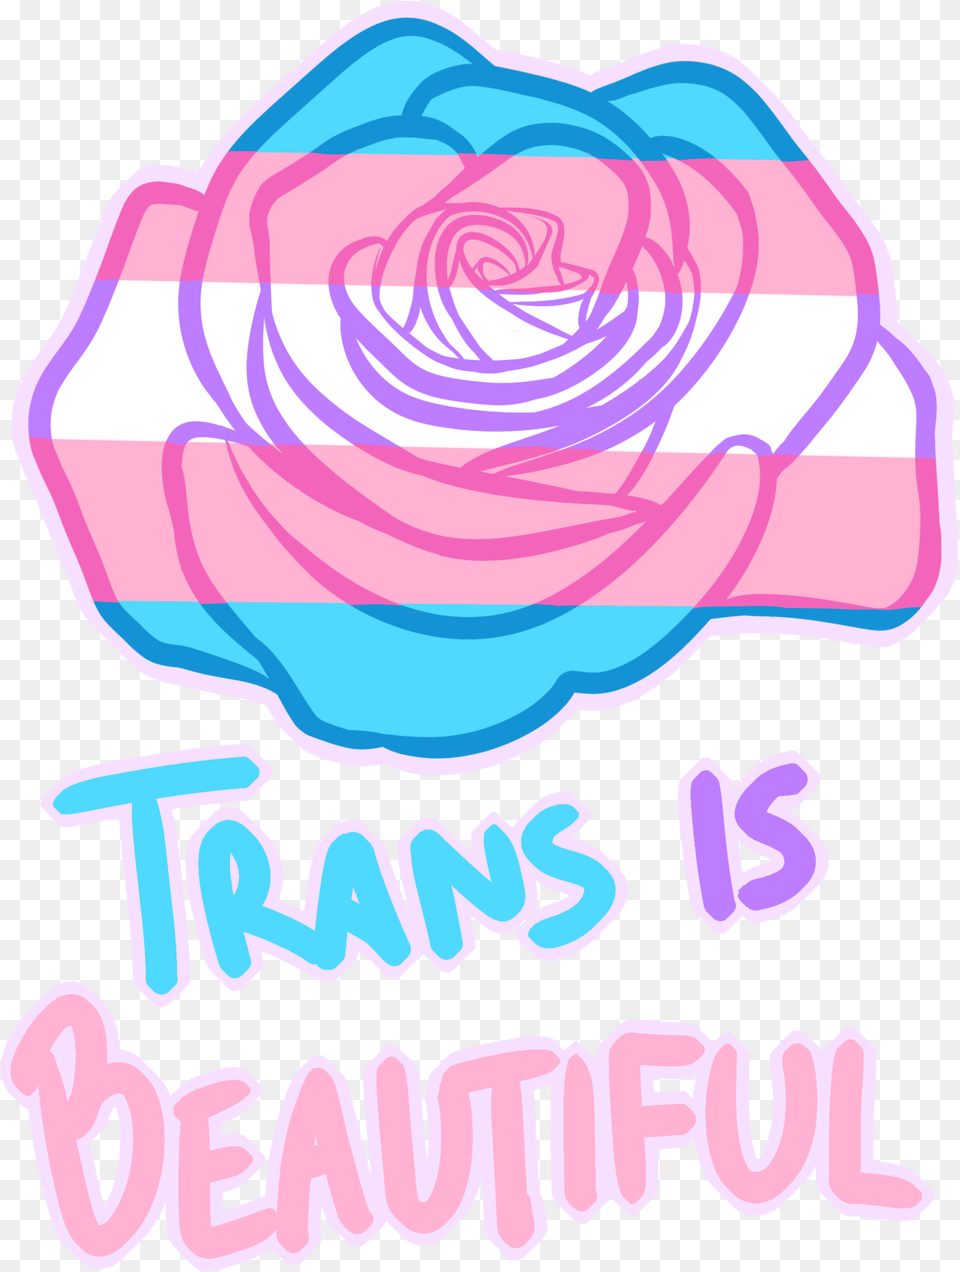 Trans Transgender Transpride Freetoedit, Flower, Rose, Plant, Sticker Free Transparent Png